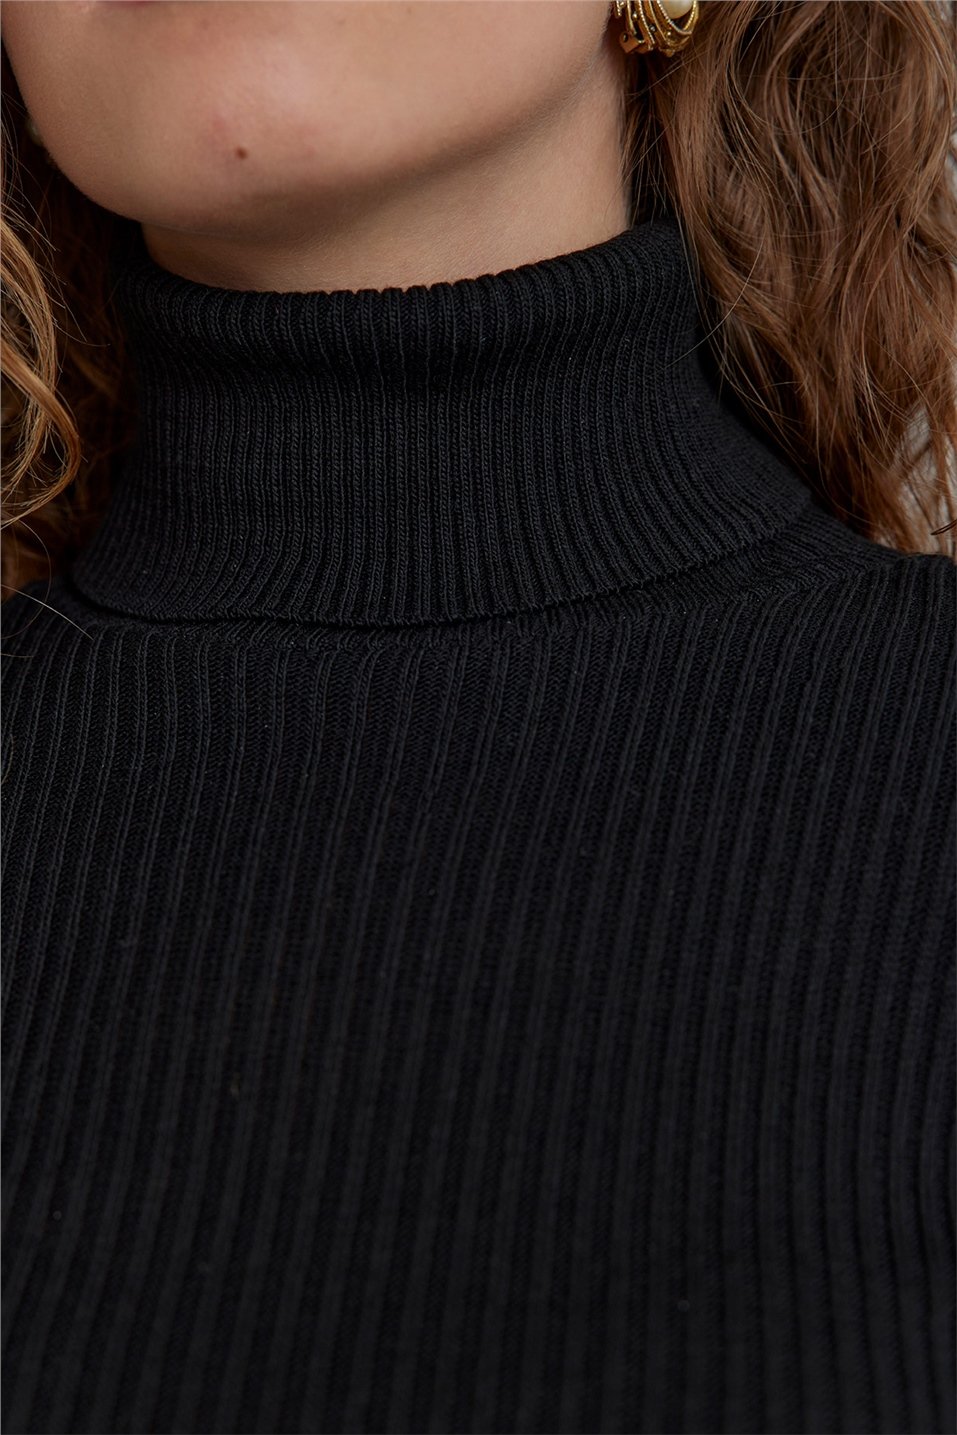 Black Turtleneck Corduroy Knitwear Sweater